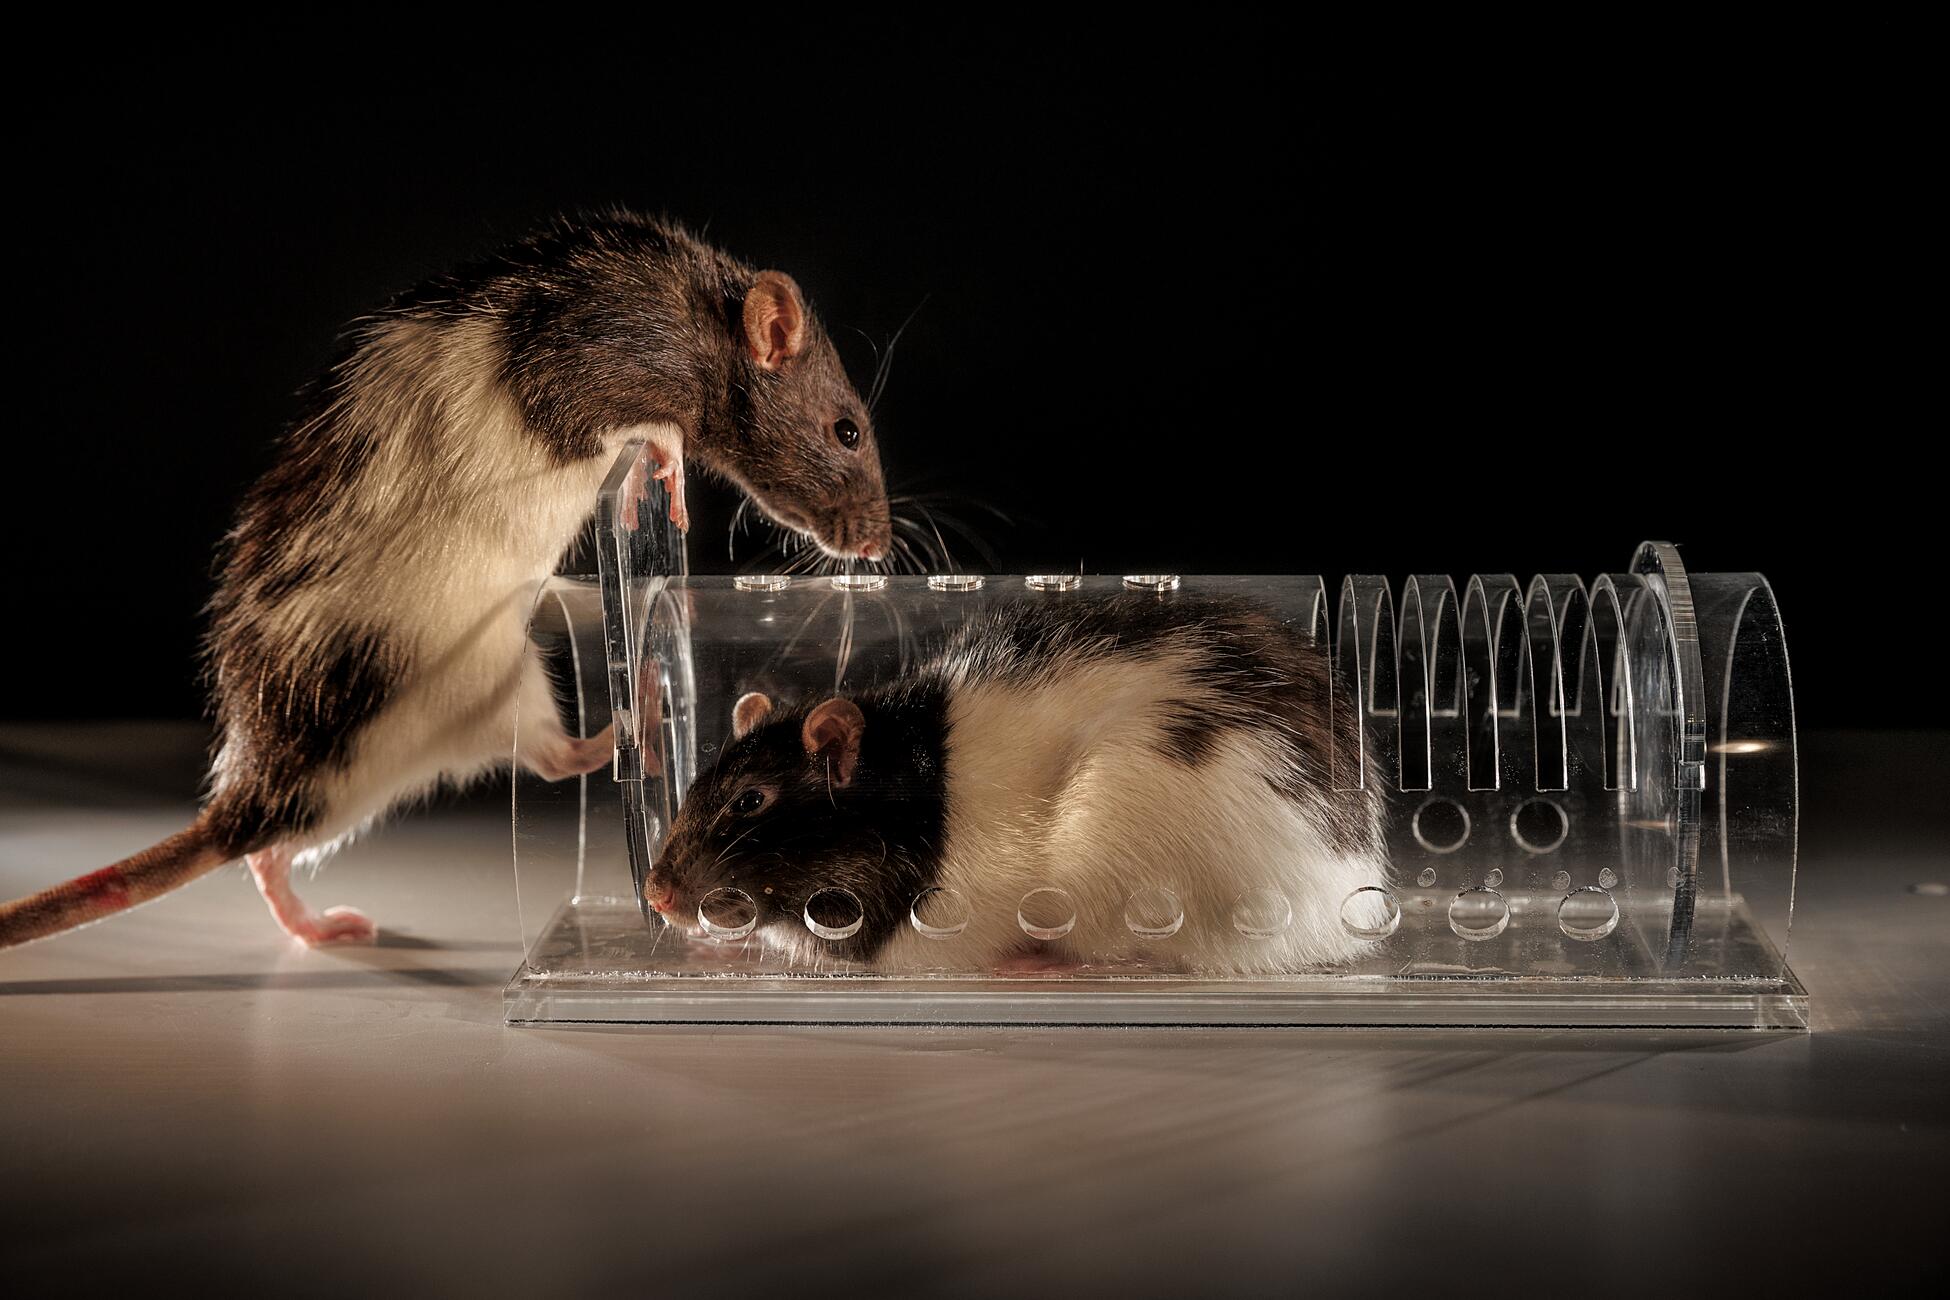 Изображение коричнево-белой крысы, по-видимому, пойманной в ловушку в стеклянной трубе, расположенной сбоку, а похожая на нее крыса взбирается на нее